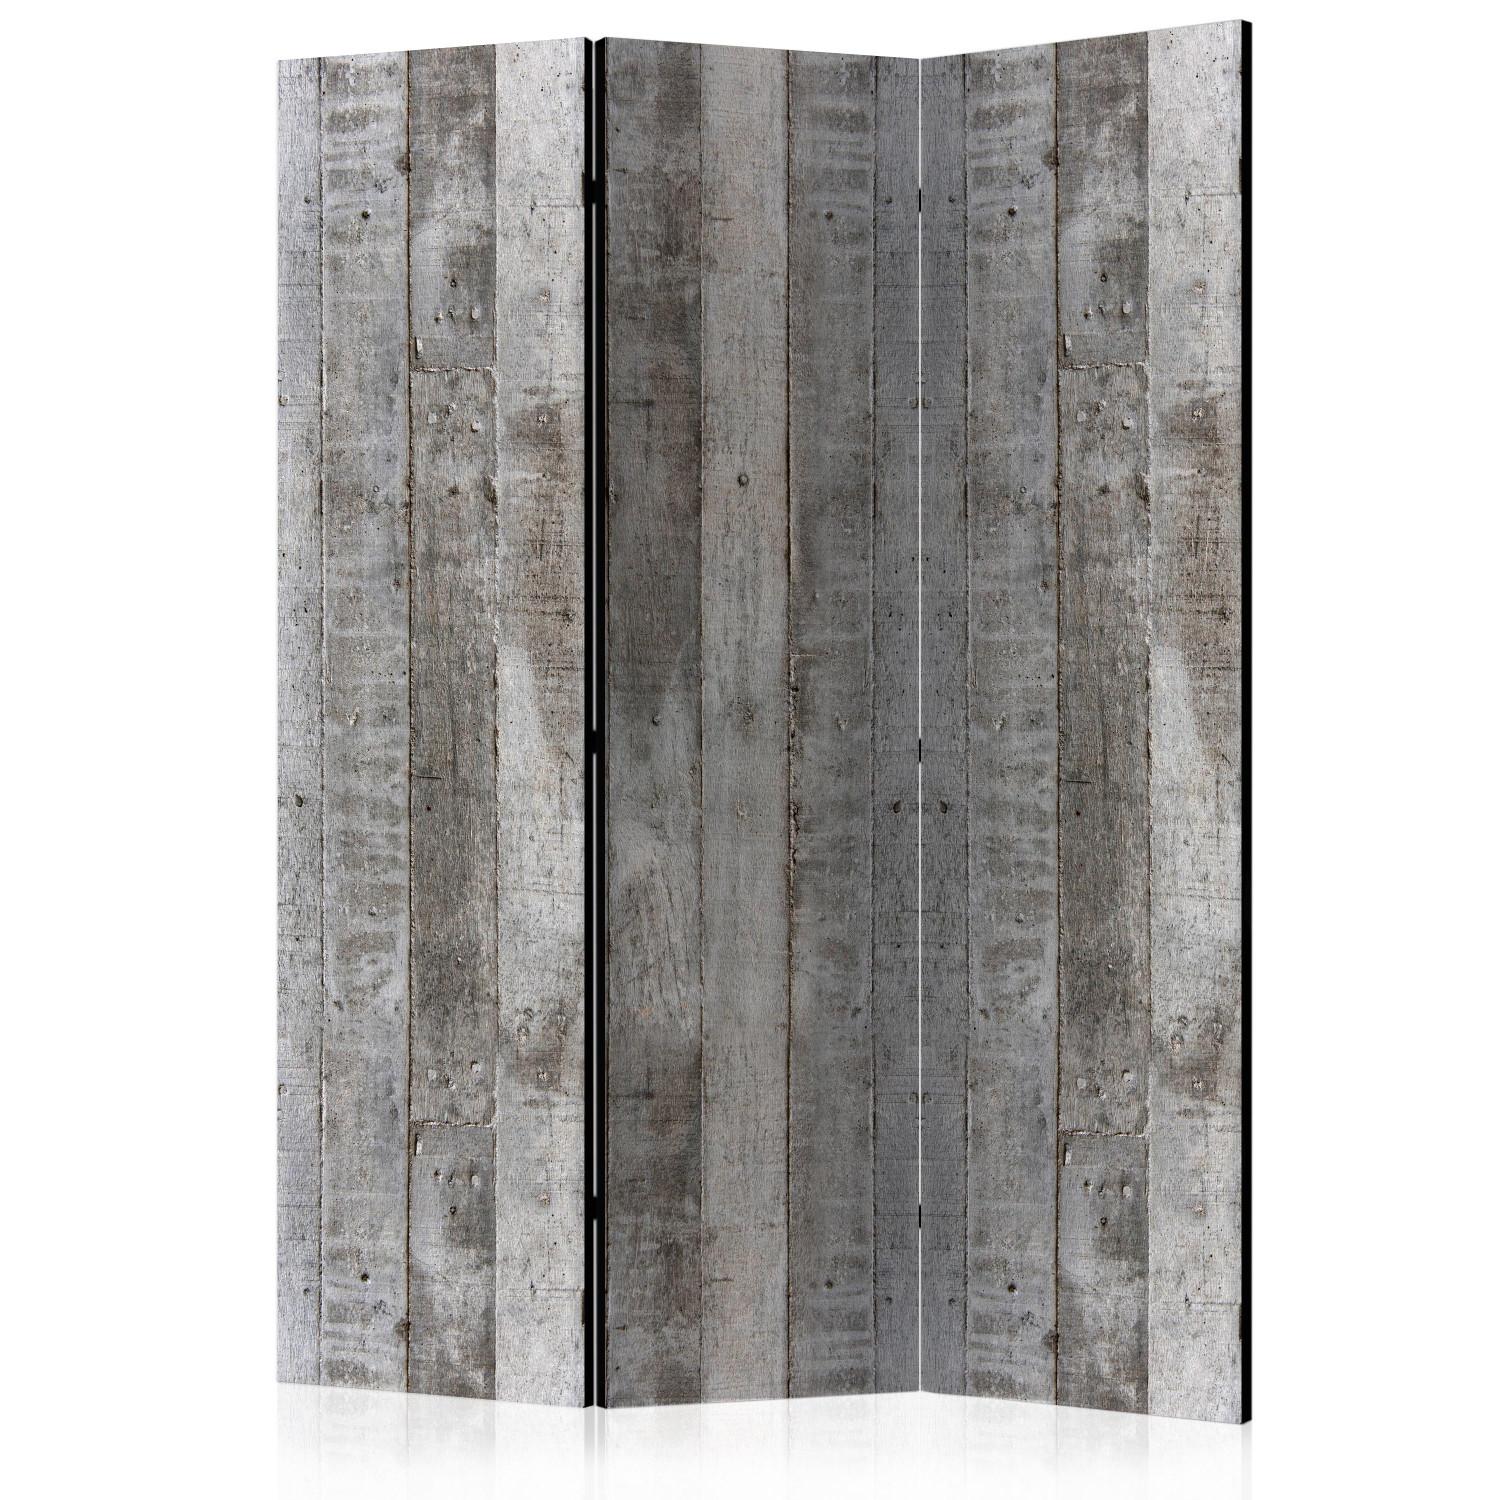 Biombo decorativo Encofrado hormigón - textura tablones madera estilo hormigón gris